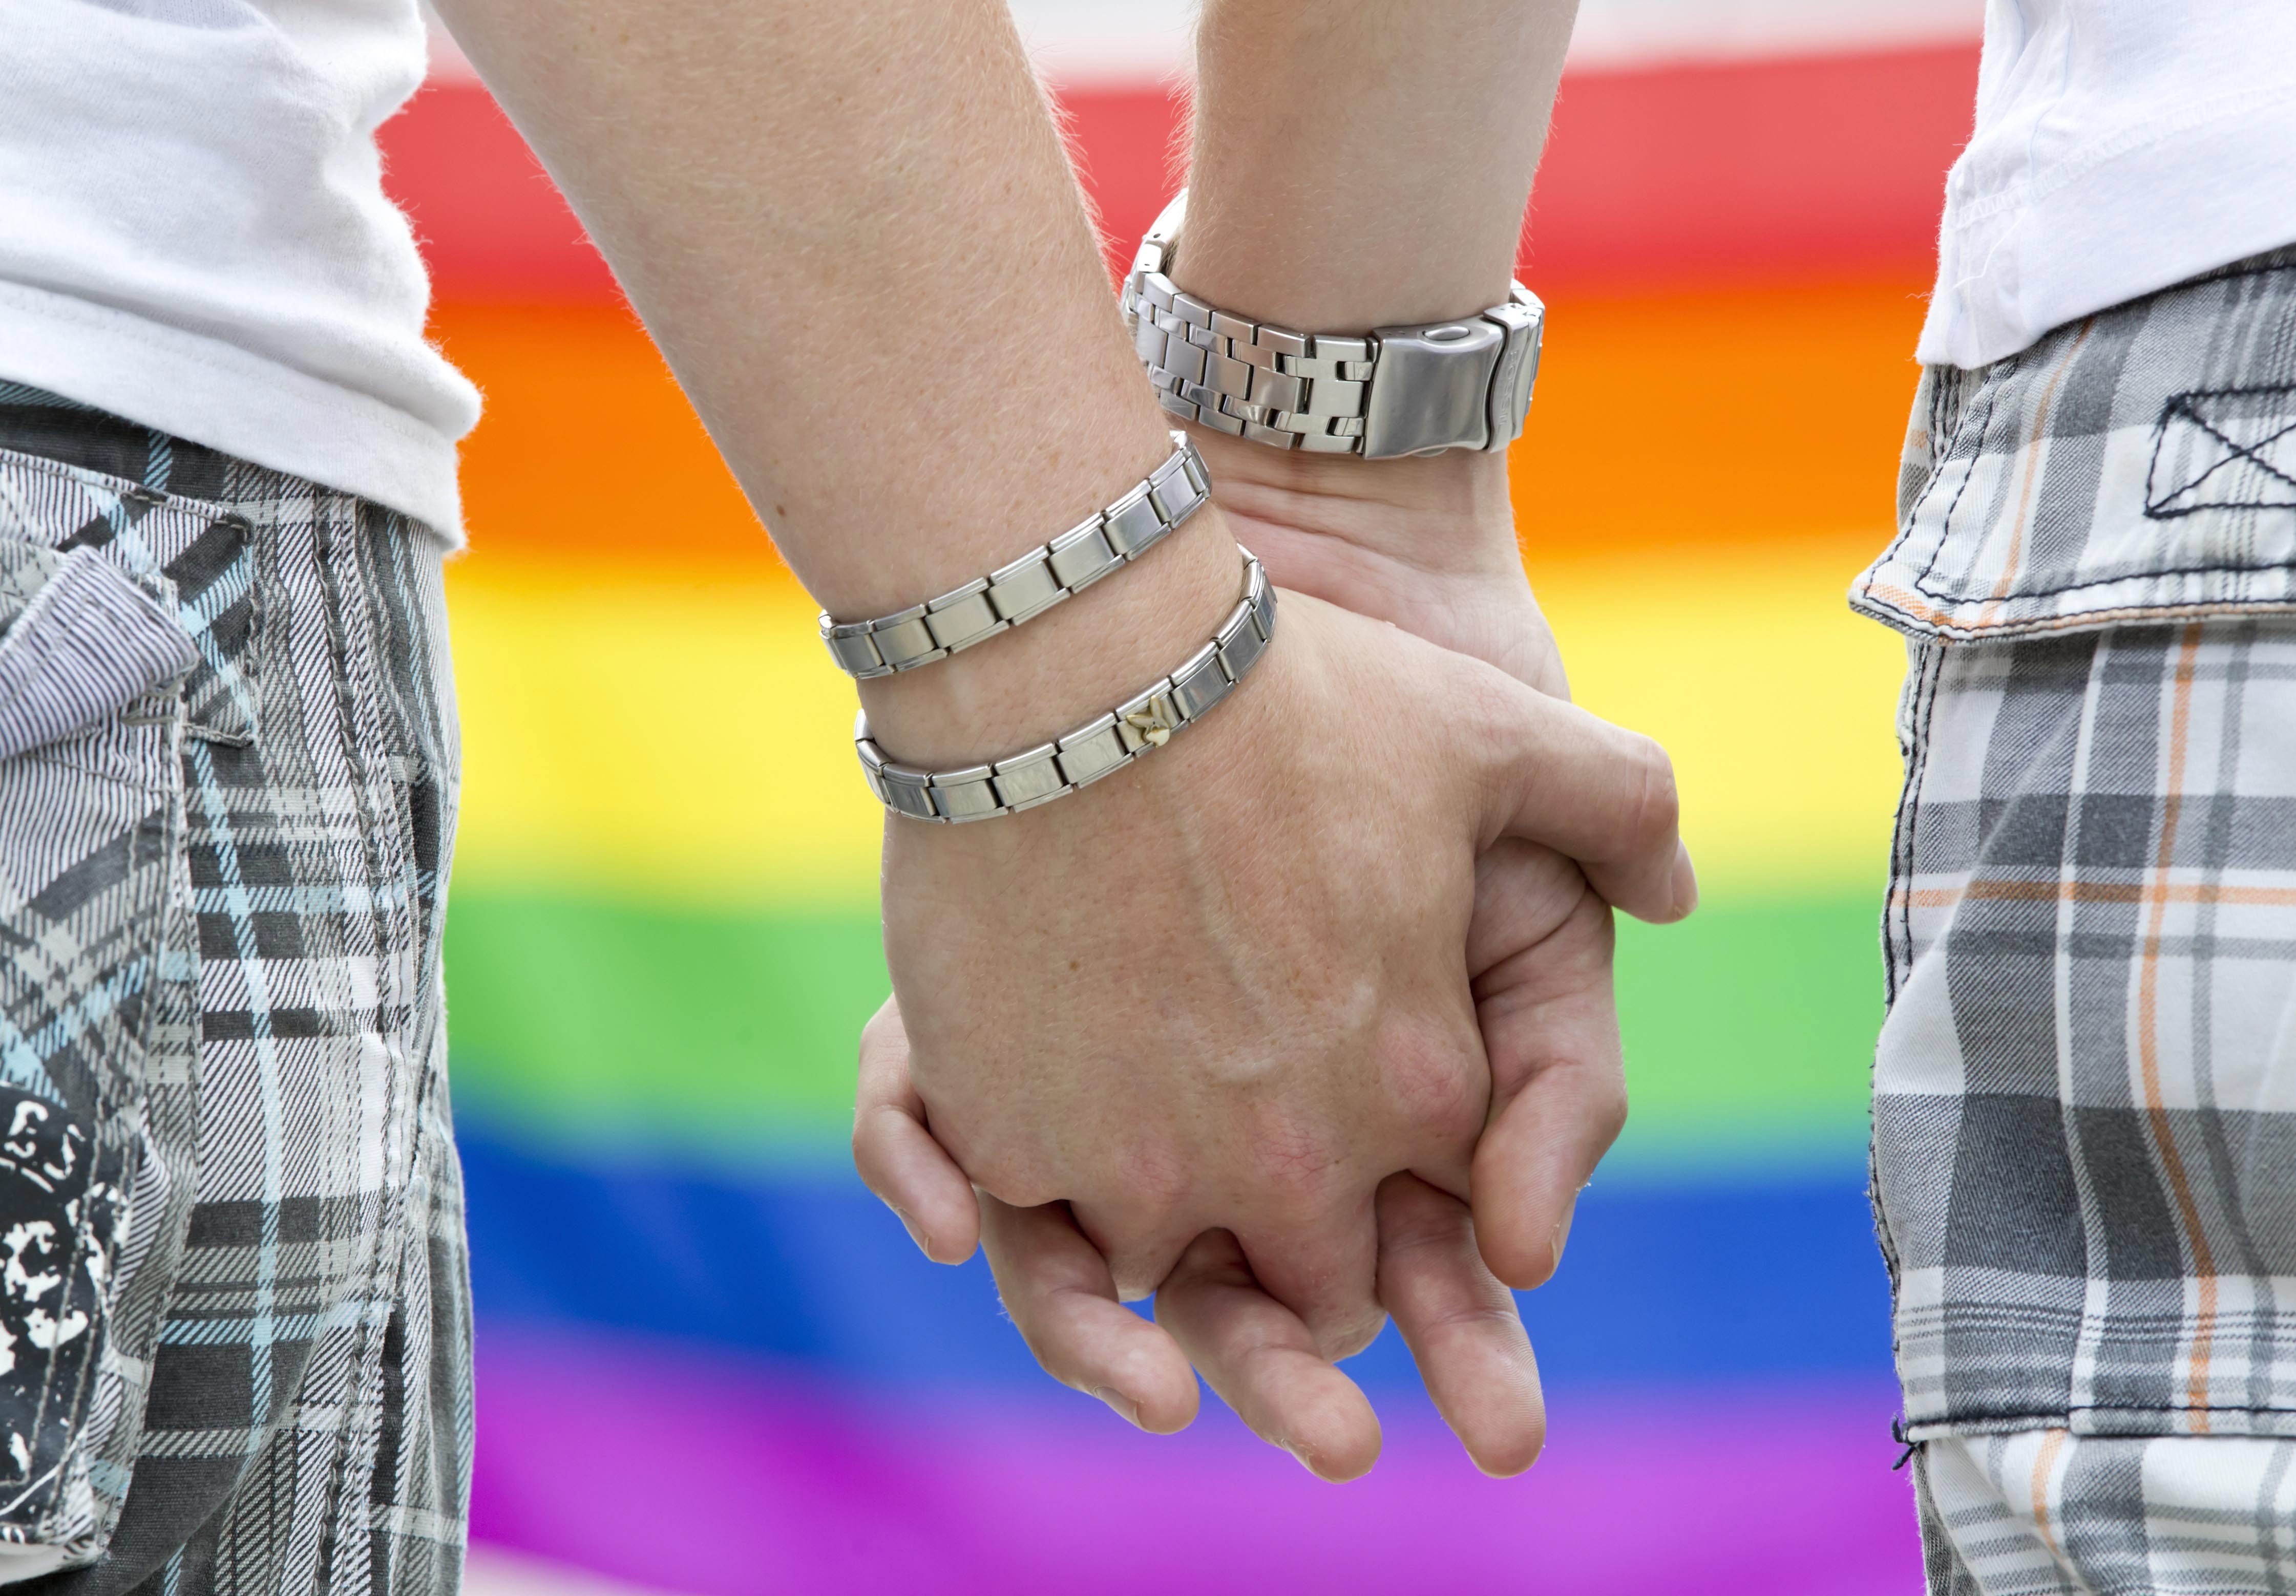 Υιοθεσία και σύμφωνο συμβίωσης ομοφυλόφιλων στην Επιτροπή Βιοηθικής